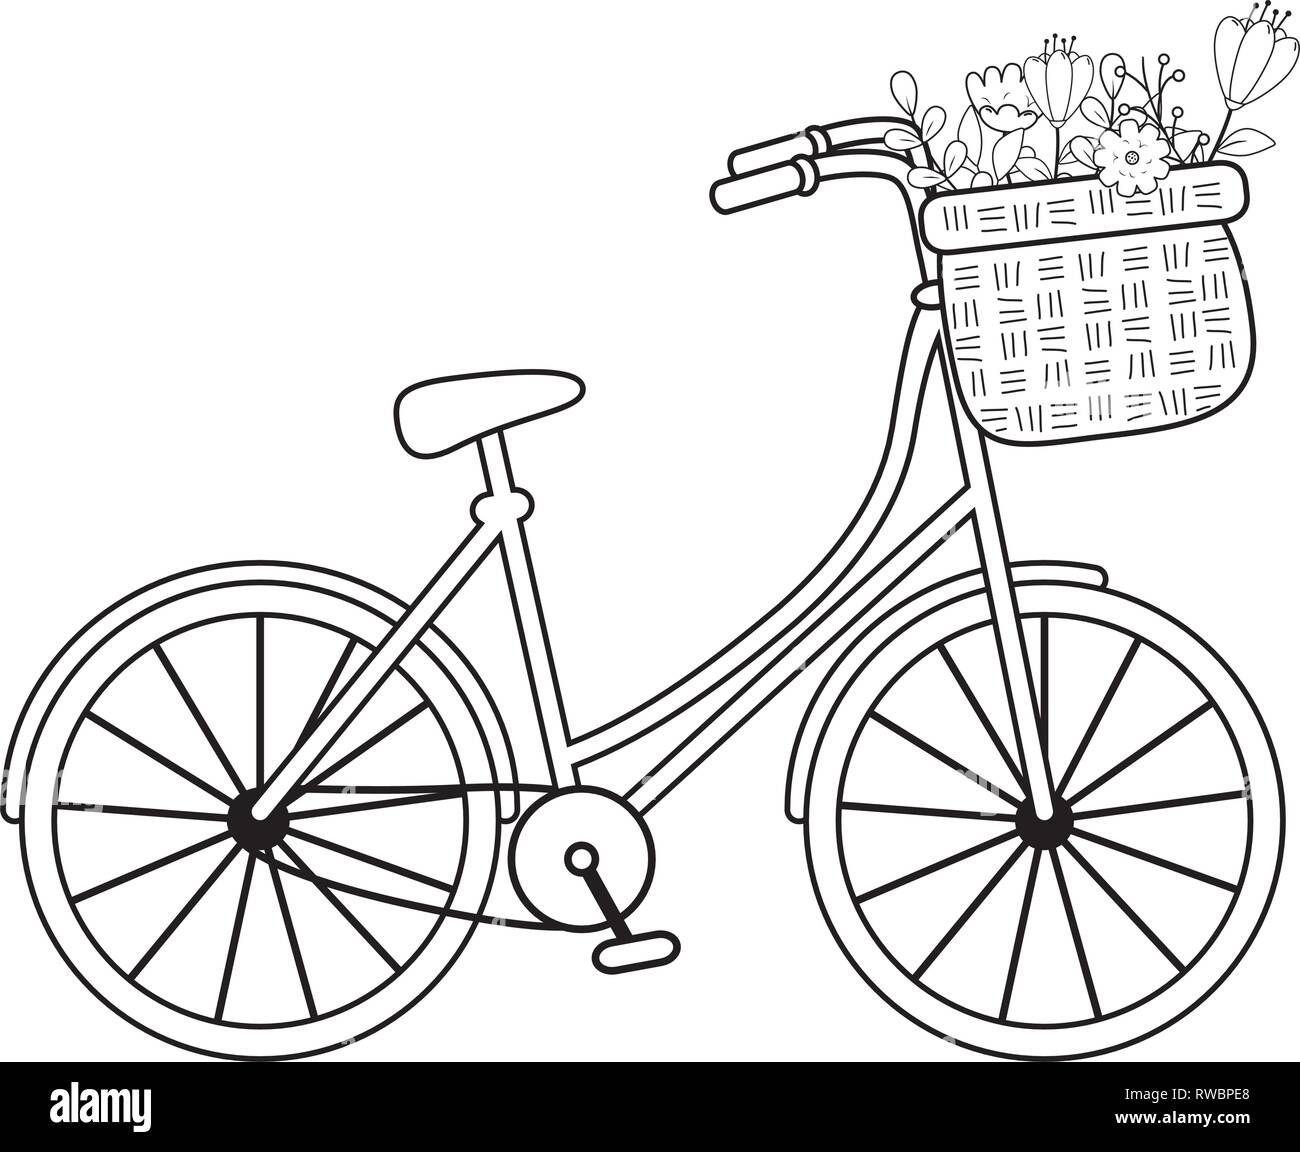 Велосипед с корзинкой цветов раскраска